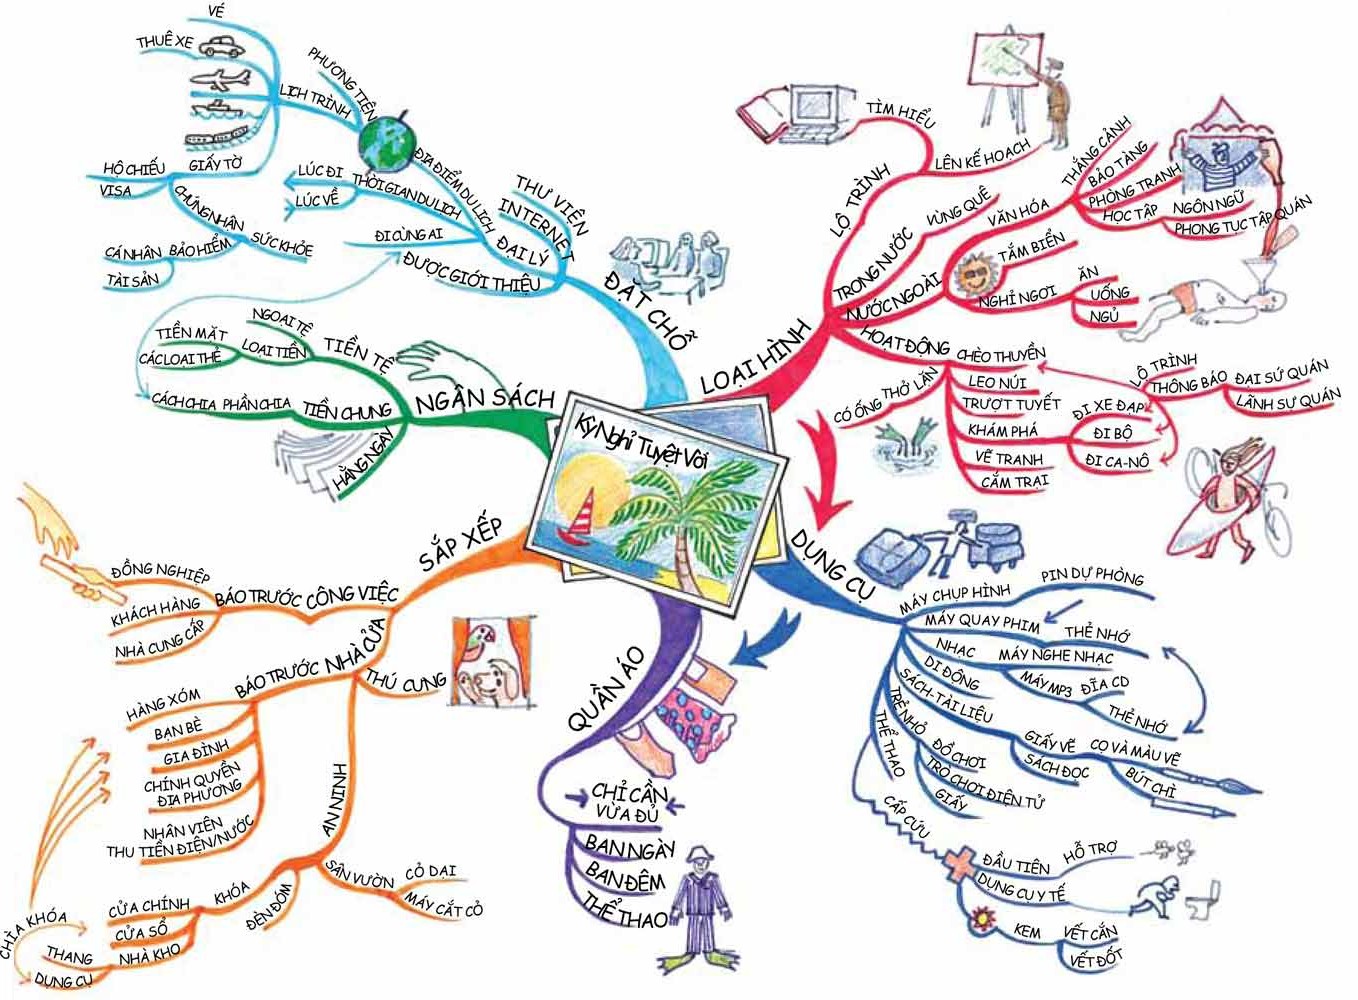 Bản đồ tư duy: Bản đồ tư duy là công cụ đặc biệt để hình dung các ý tưởng phức tạp và sắp đặt chúng thành một cấu trúc logic, dễ hiểu. Xem bức tranh liên quan đến bản đồ tư duy để hiểu thêm về cách sử dụng nó trong các phương pháp học tập, quản lý và kinh doanh.